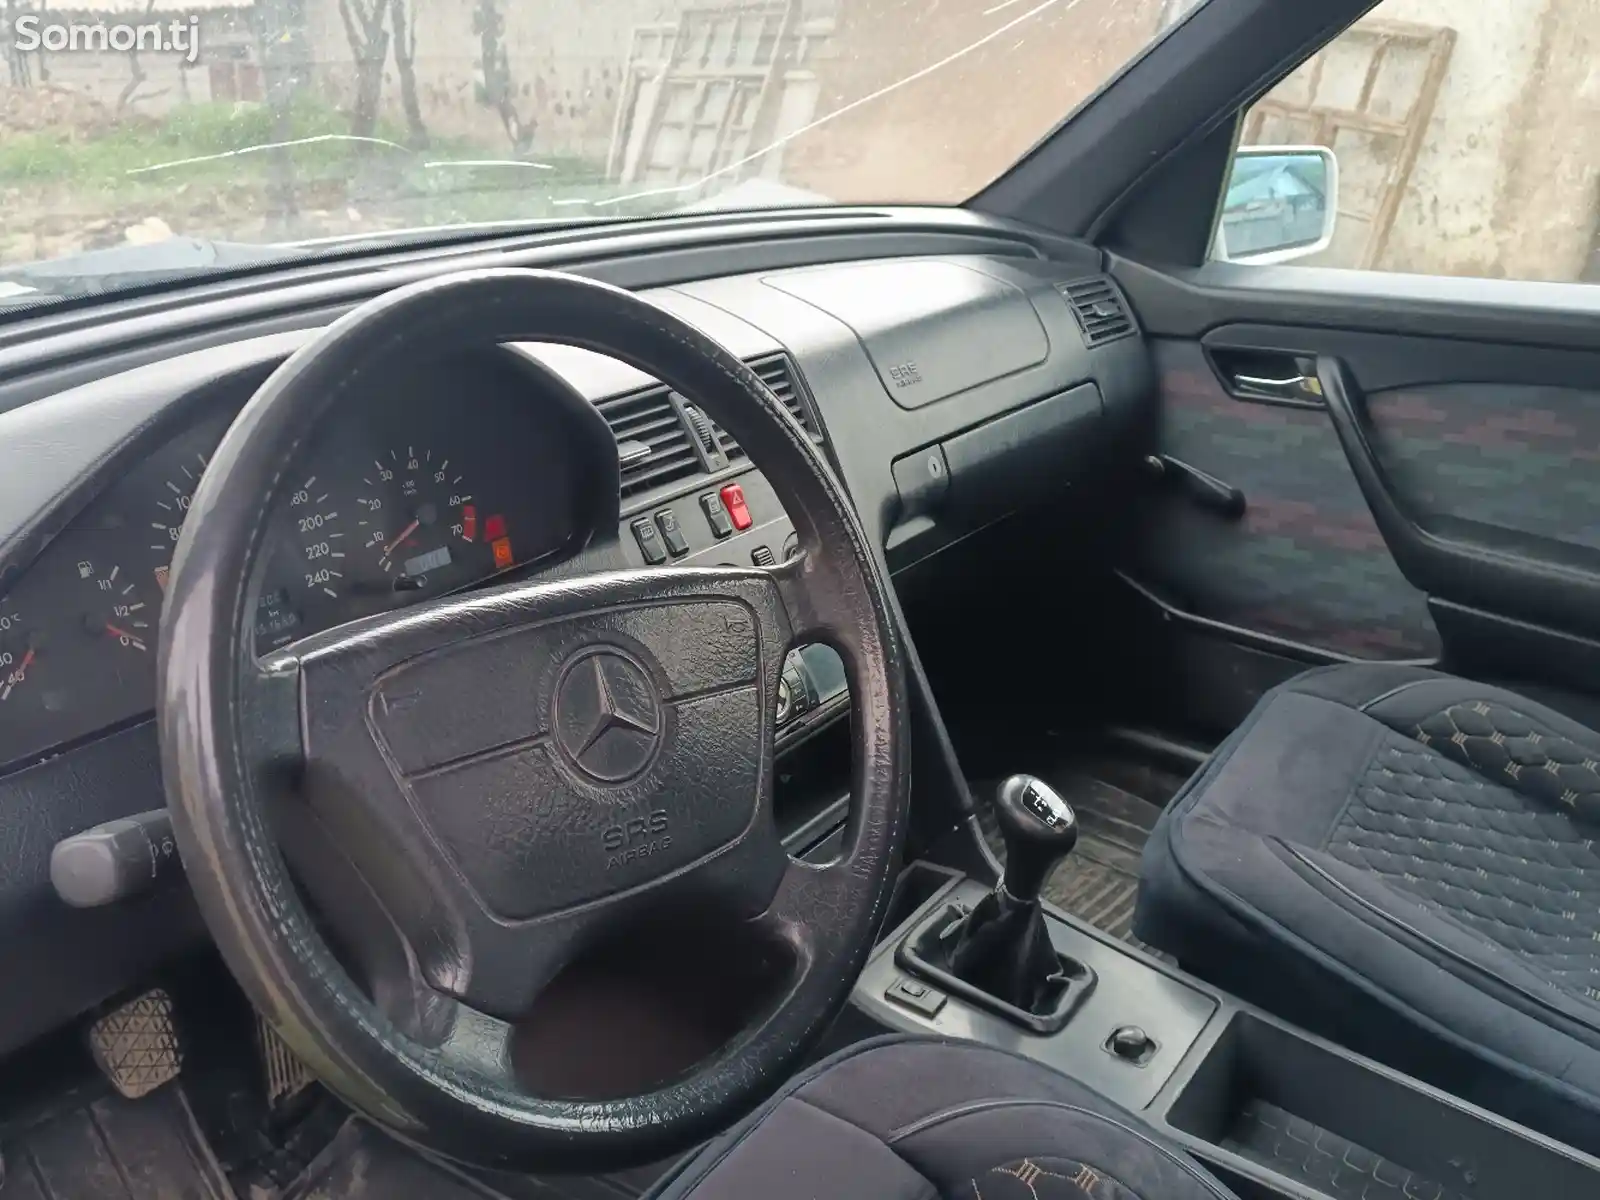 Mercedes-Benz S class, 1996-2